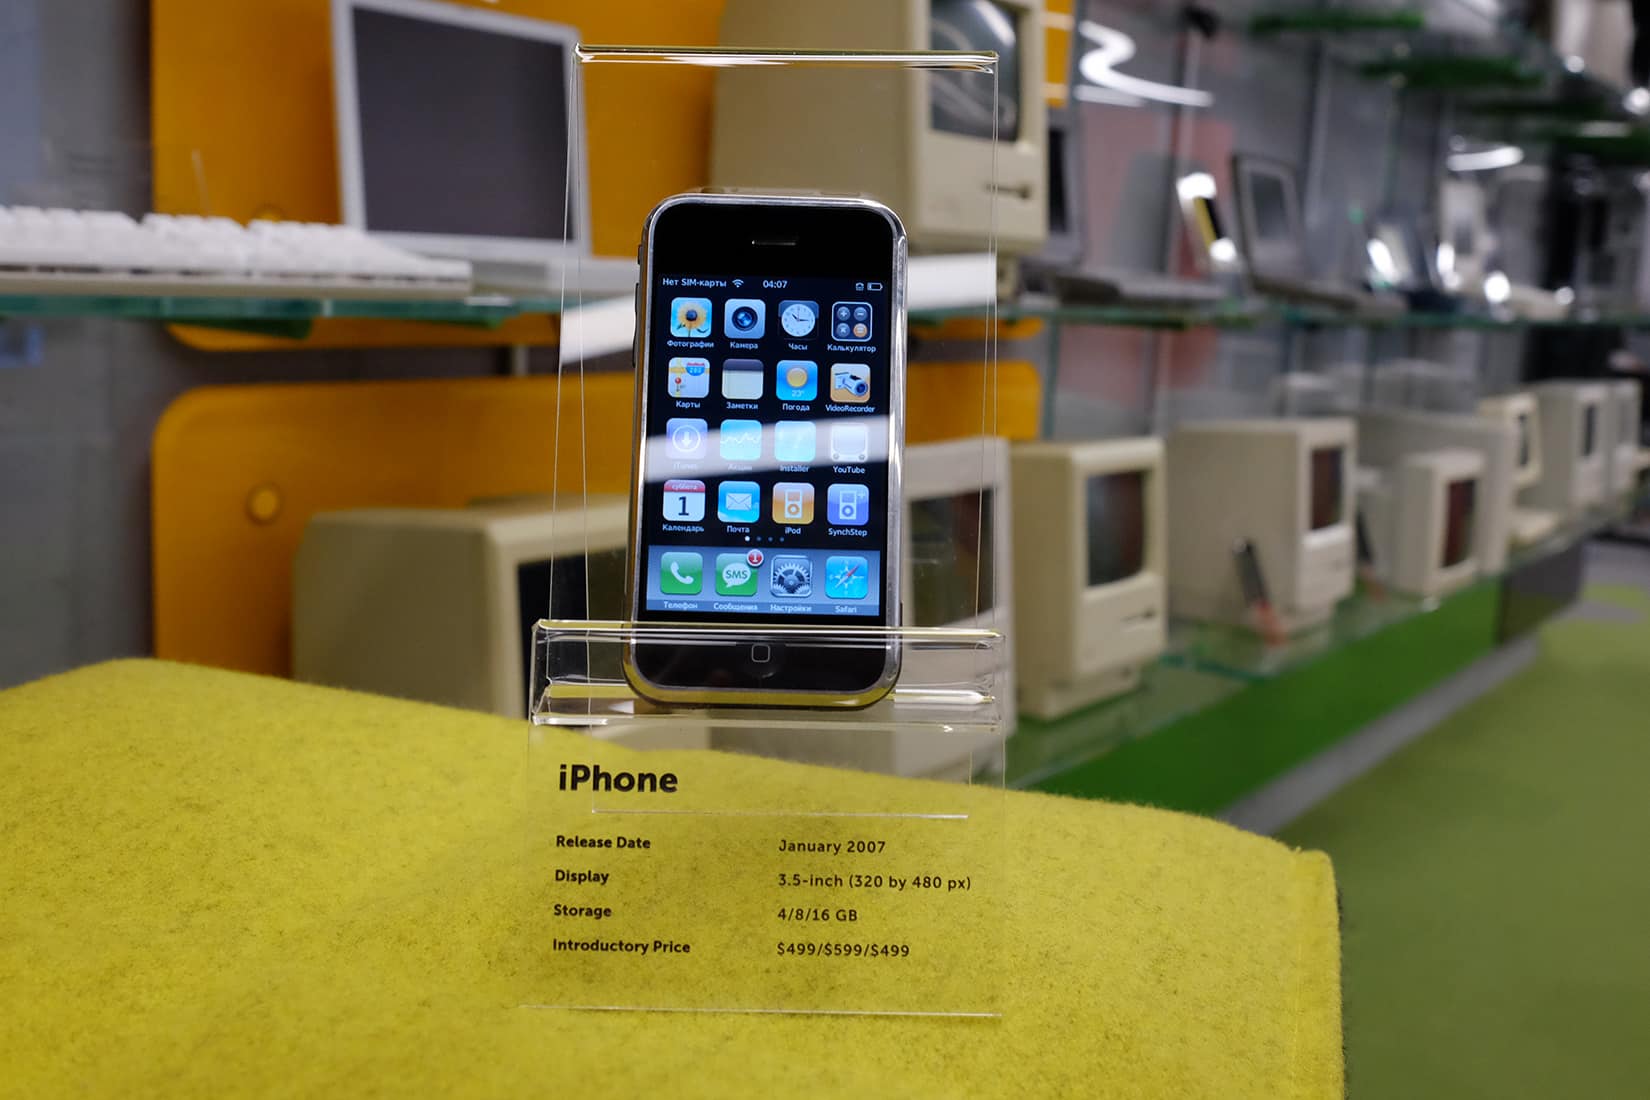 iPhones at MacPaw museum